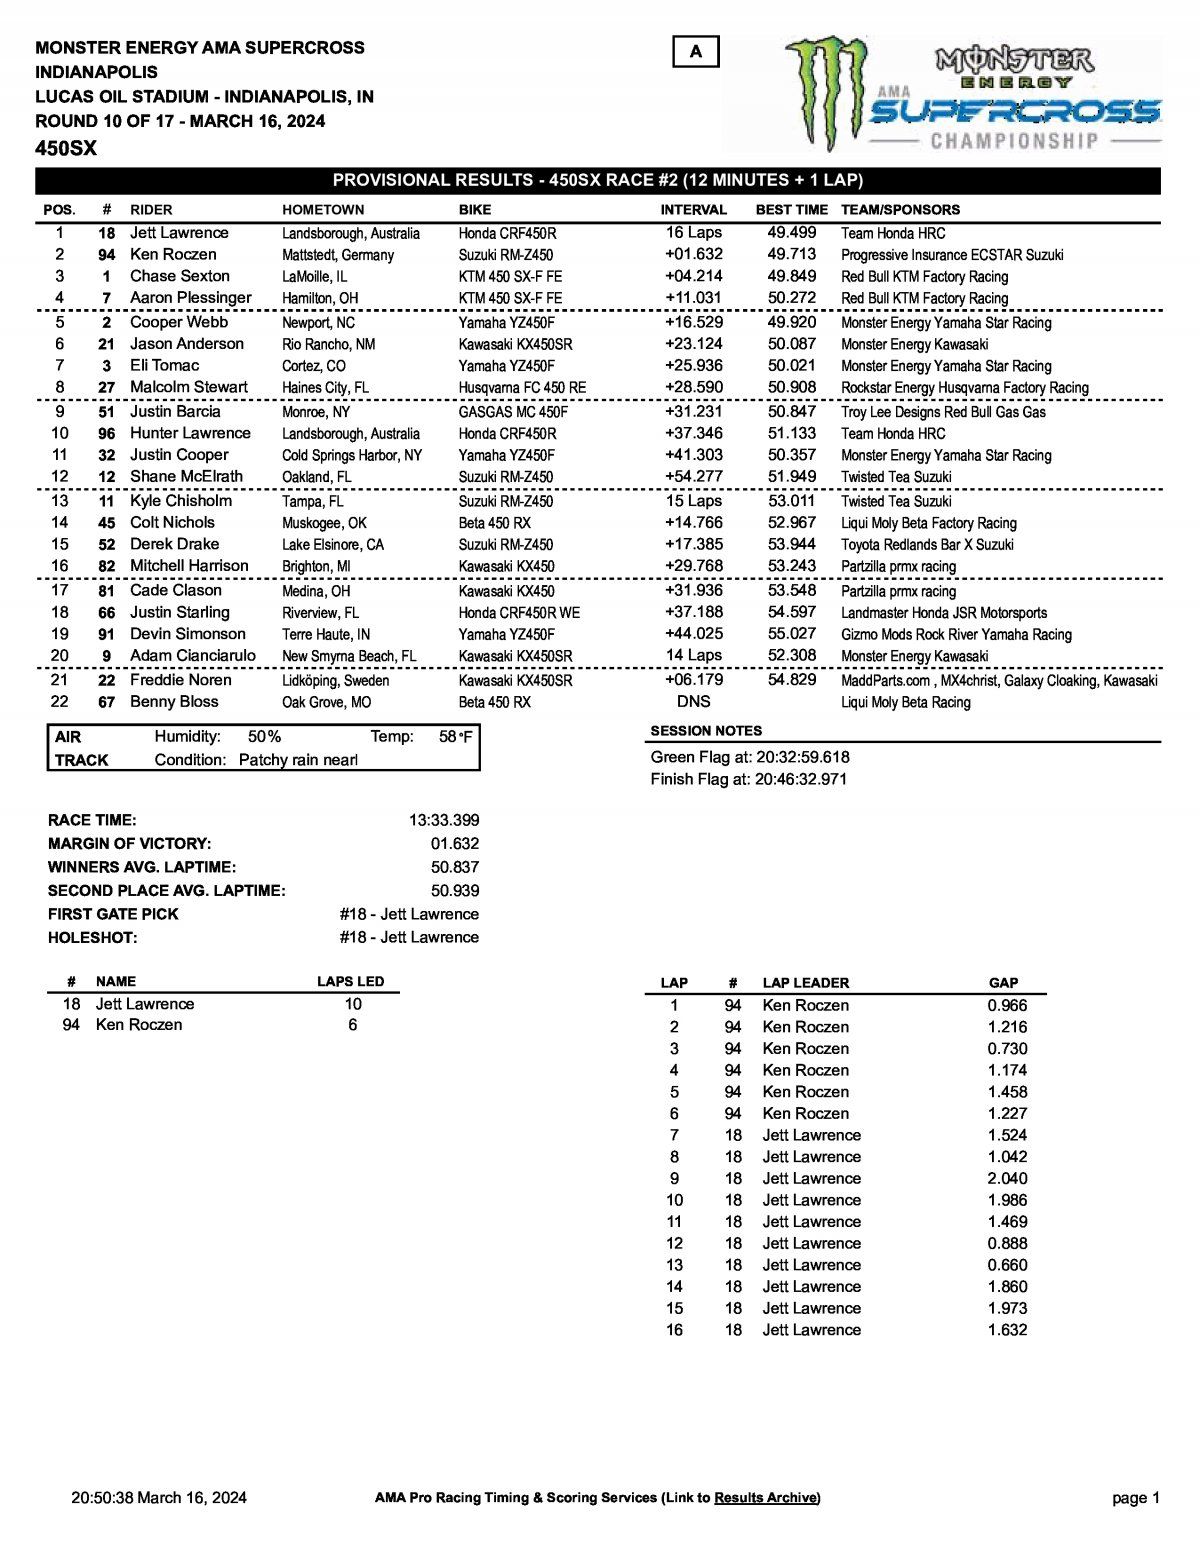 Результаты 2 гонки Тройной Короны Индианаполиса - AMA Supercross 450SX (16/03/2024)